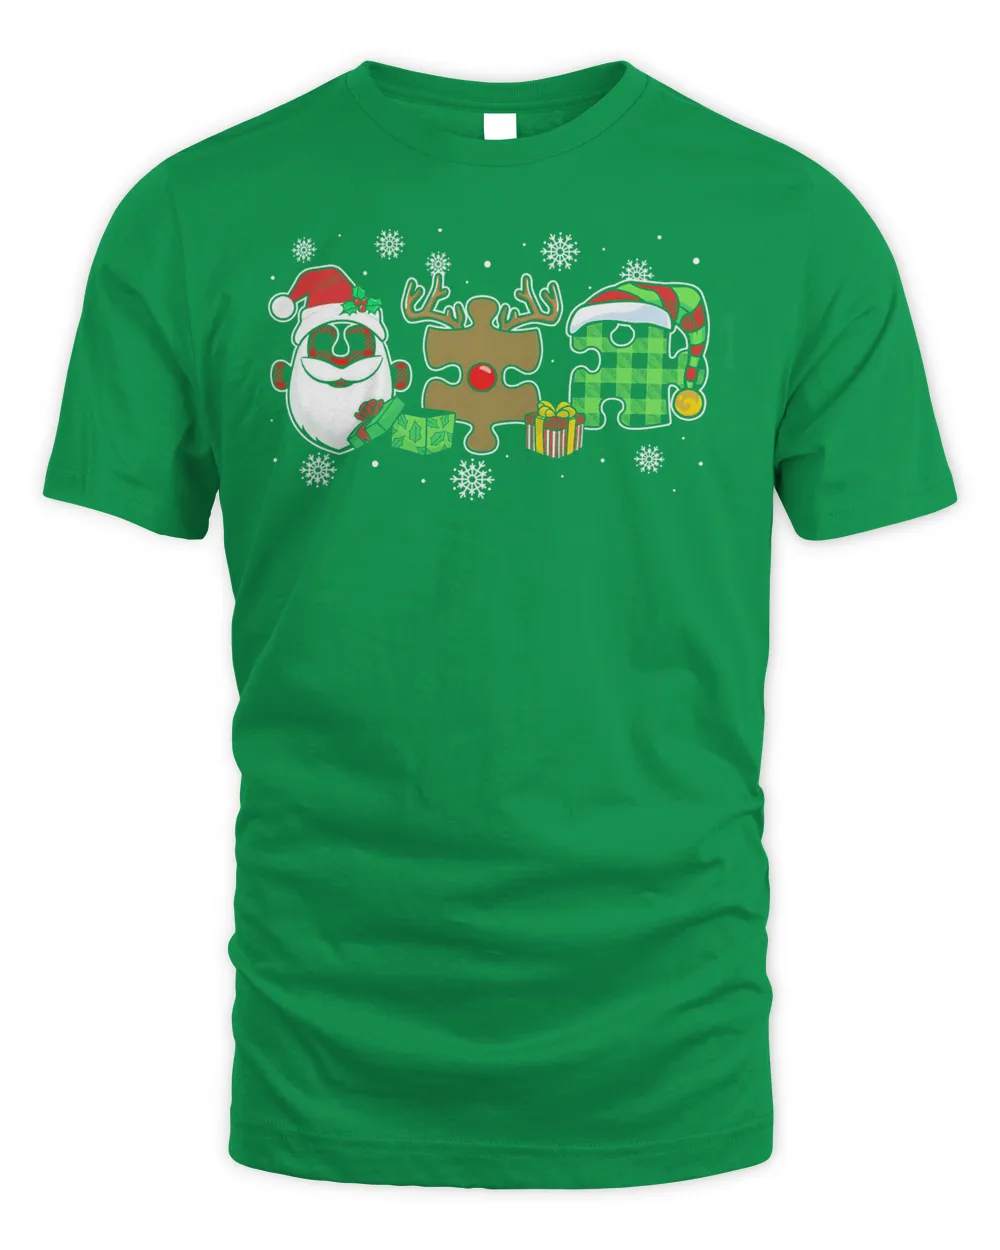 Santa Claus And Reindeer Autism Christmas Shirt